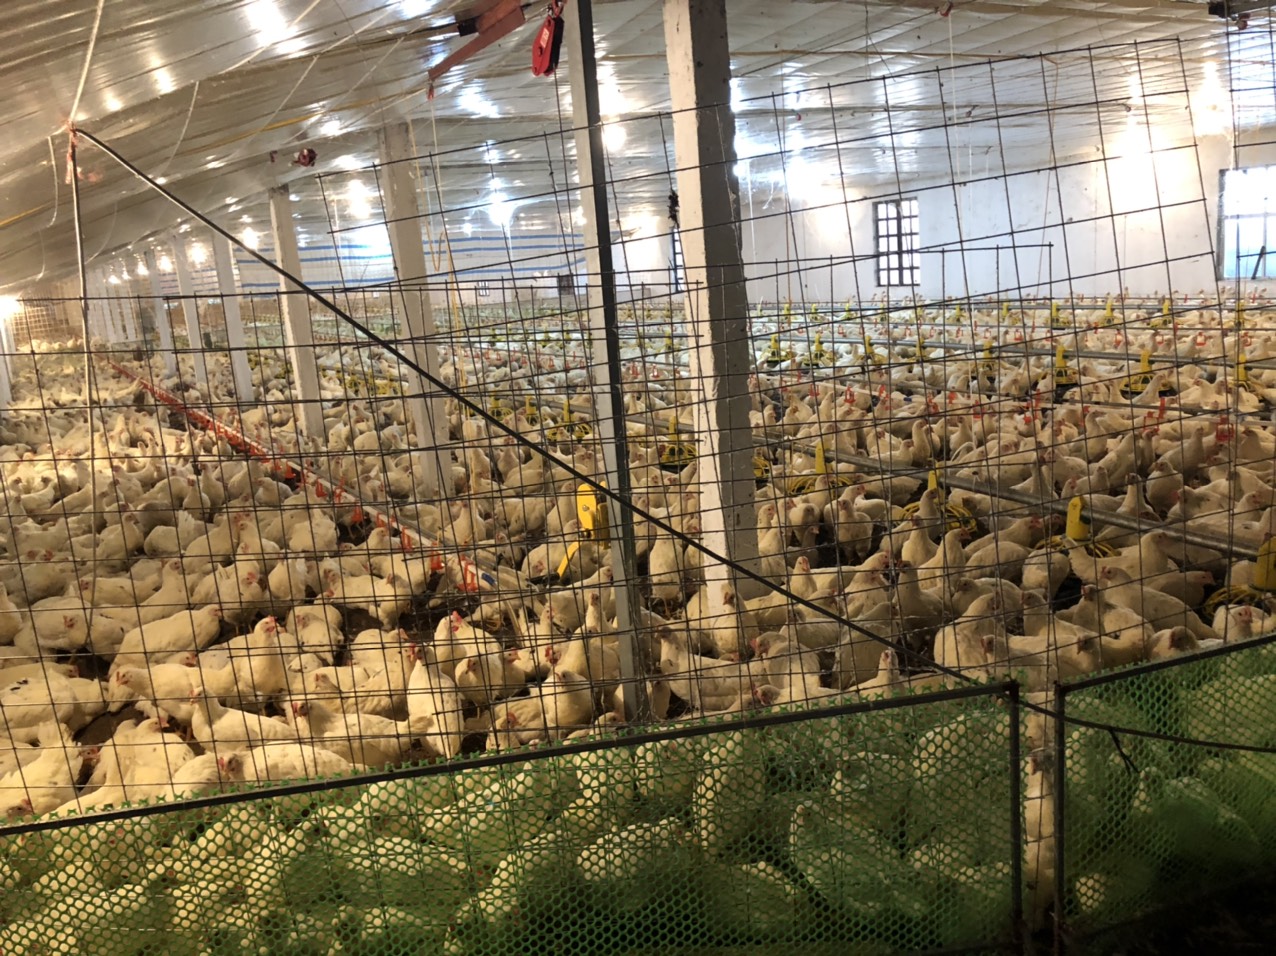 Mô hình chăn nuôi gà sinh sản ứng dụng công nghệ tự động hóa trong sản xuất, giám sát môi trường không khí, chăm sóc, nuôi dưỡng, quản lý sức khỏe vật nuôi